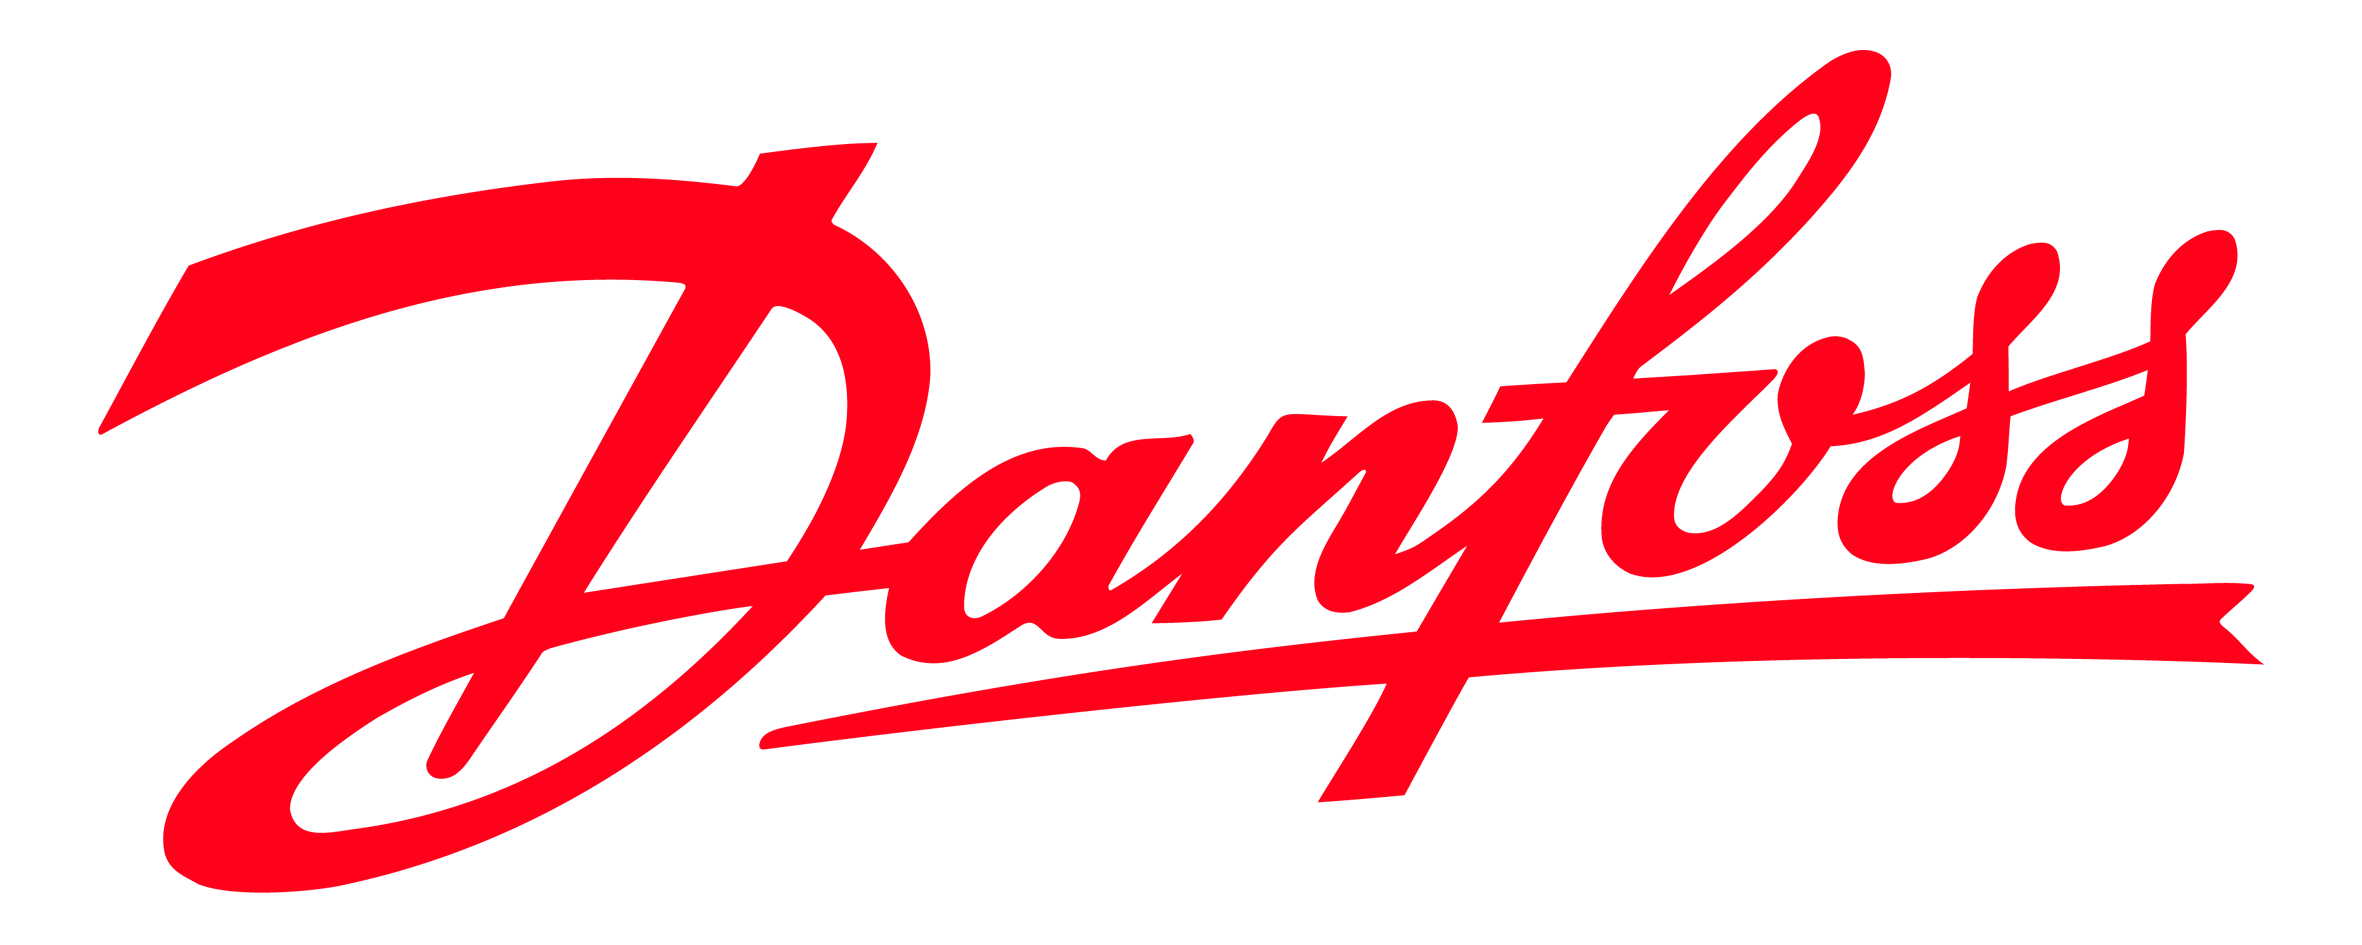 Danfoss Logo Wallpaper